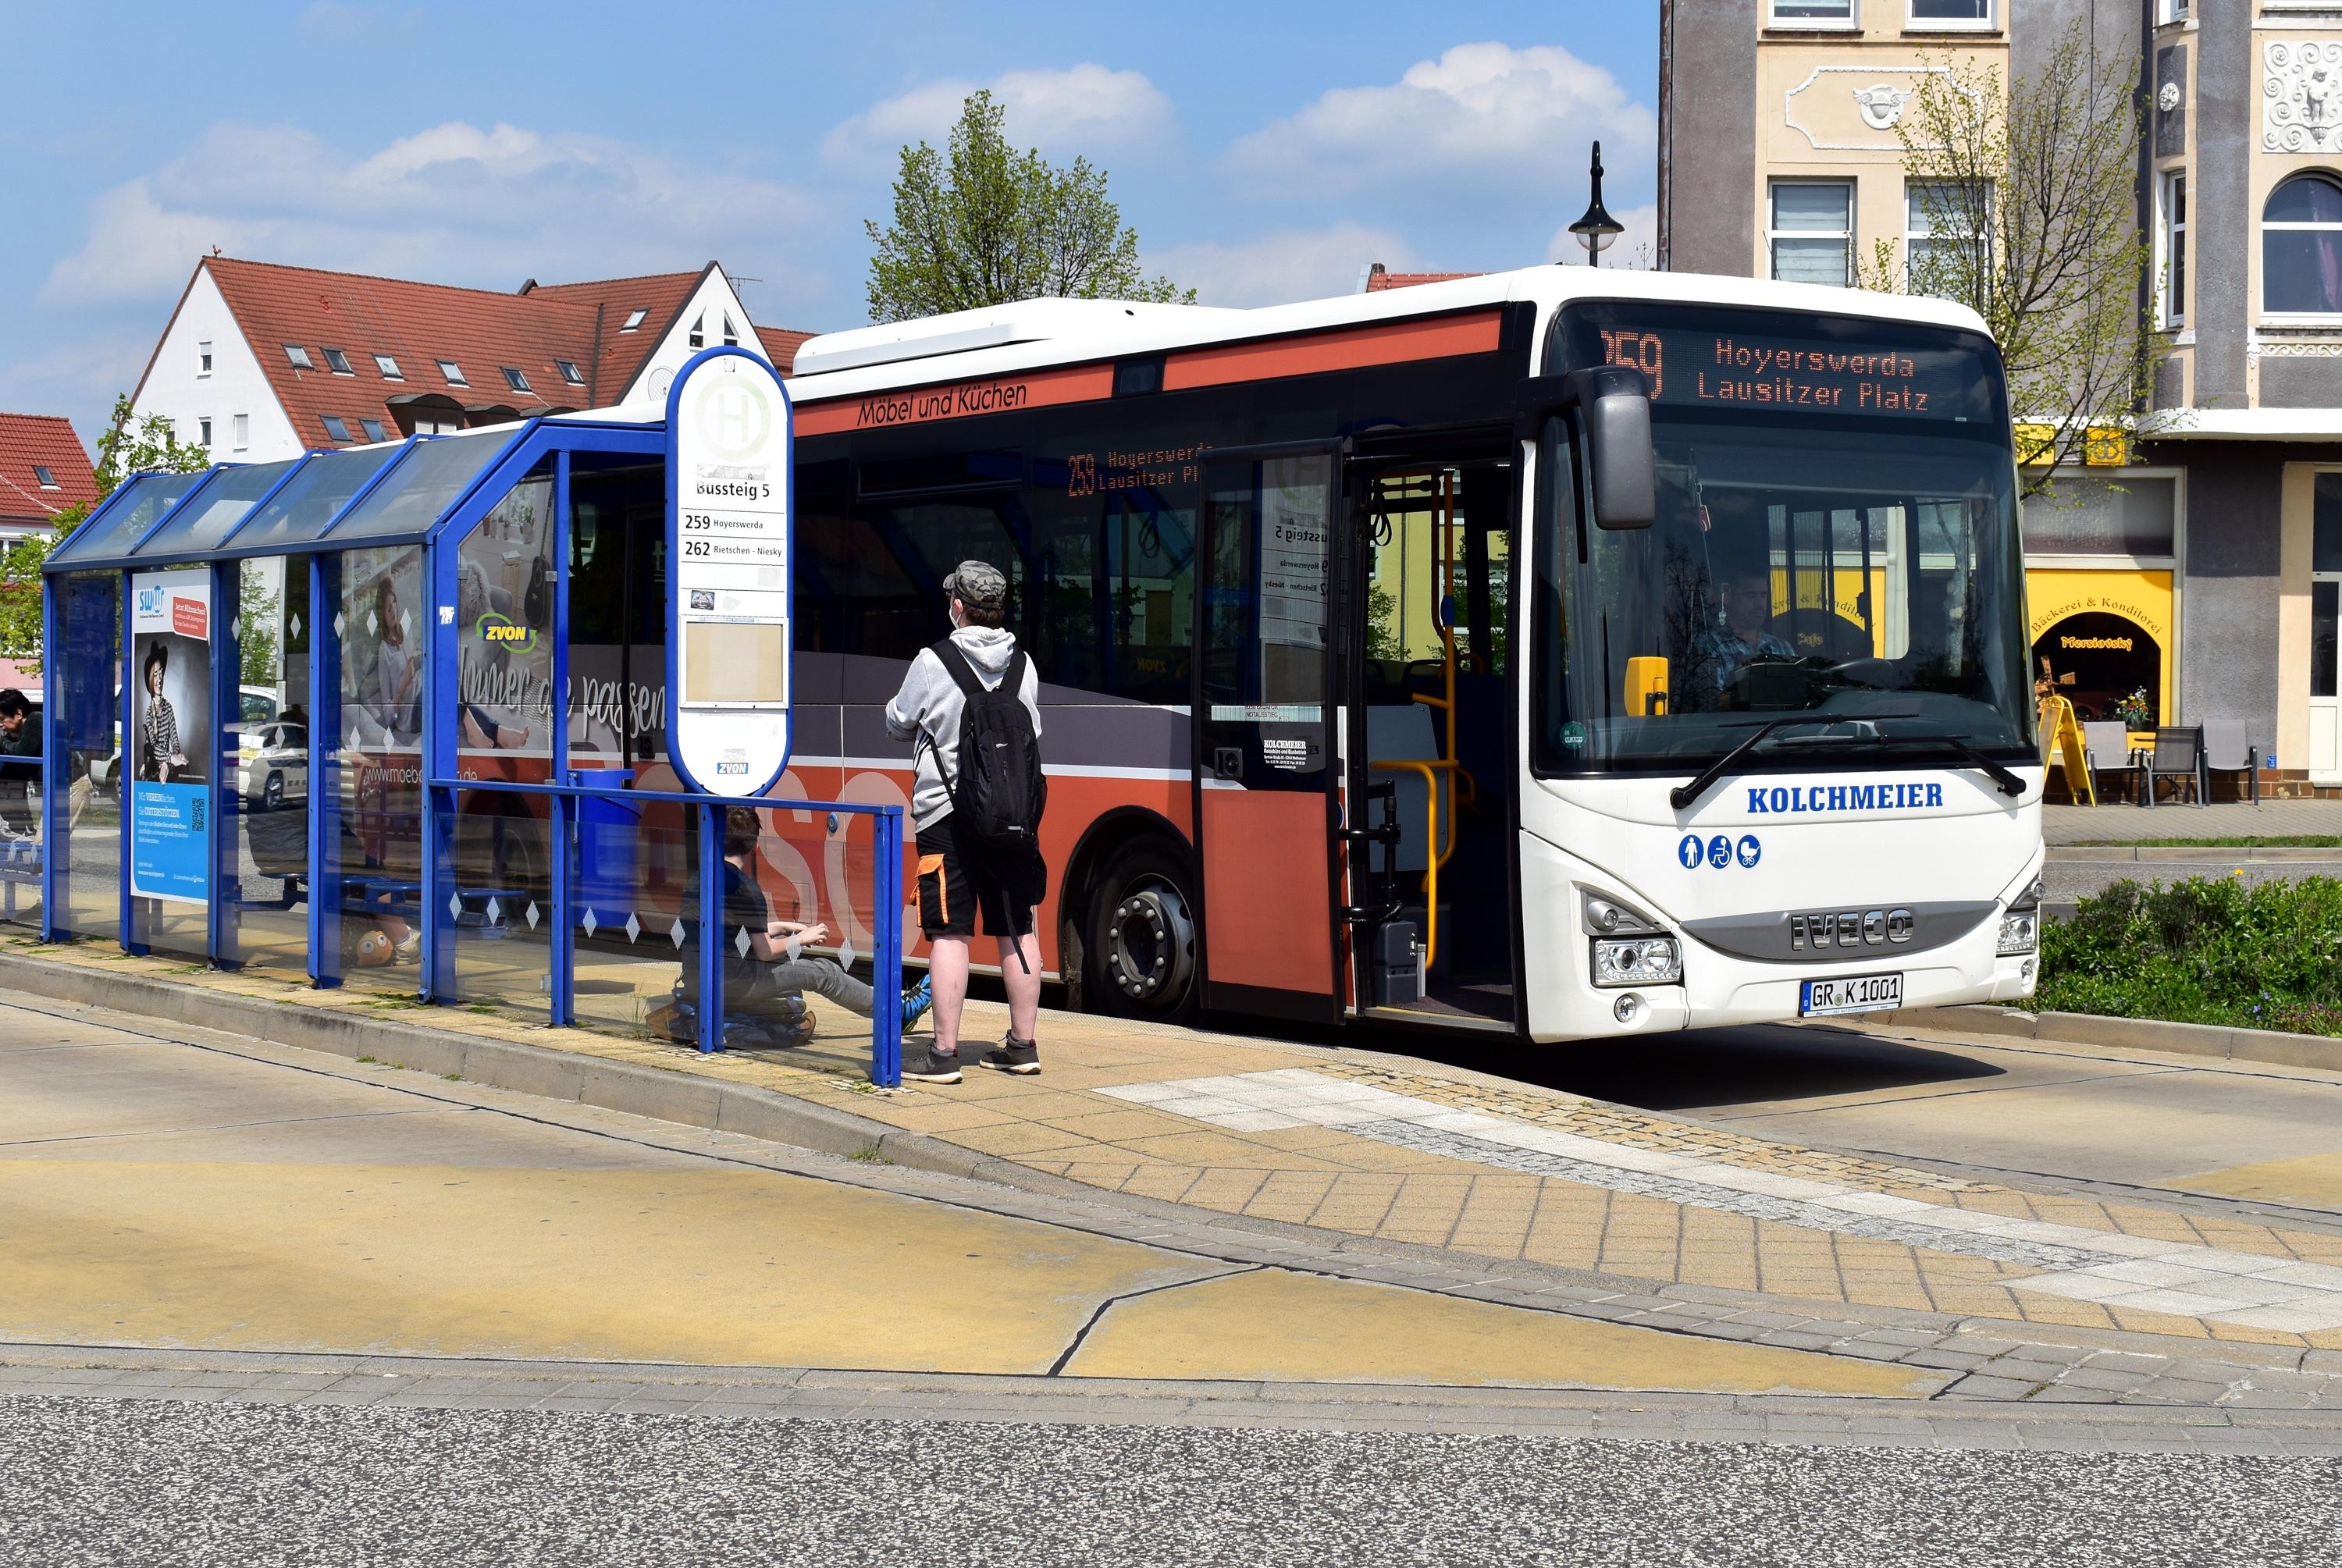 259 Hoyerswerda-Lausitzer Platz Weißwasser Bahnhof/Busbahnhof